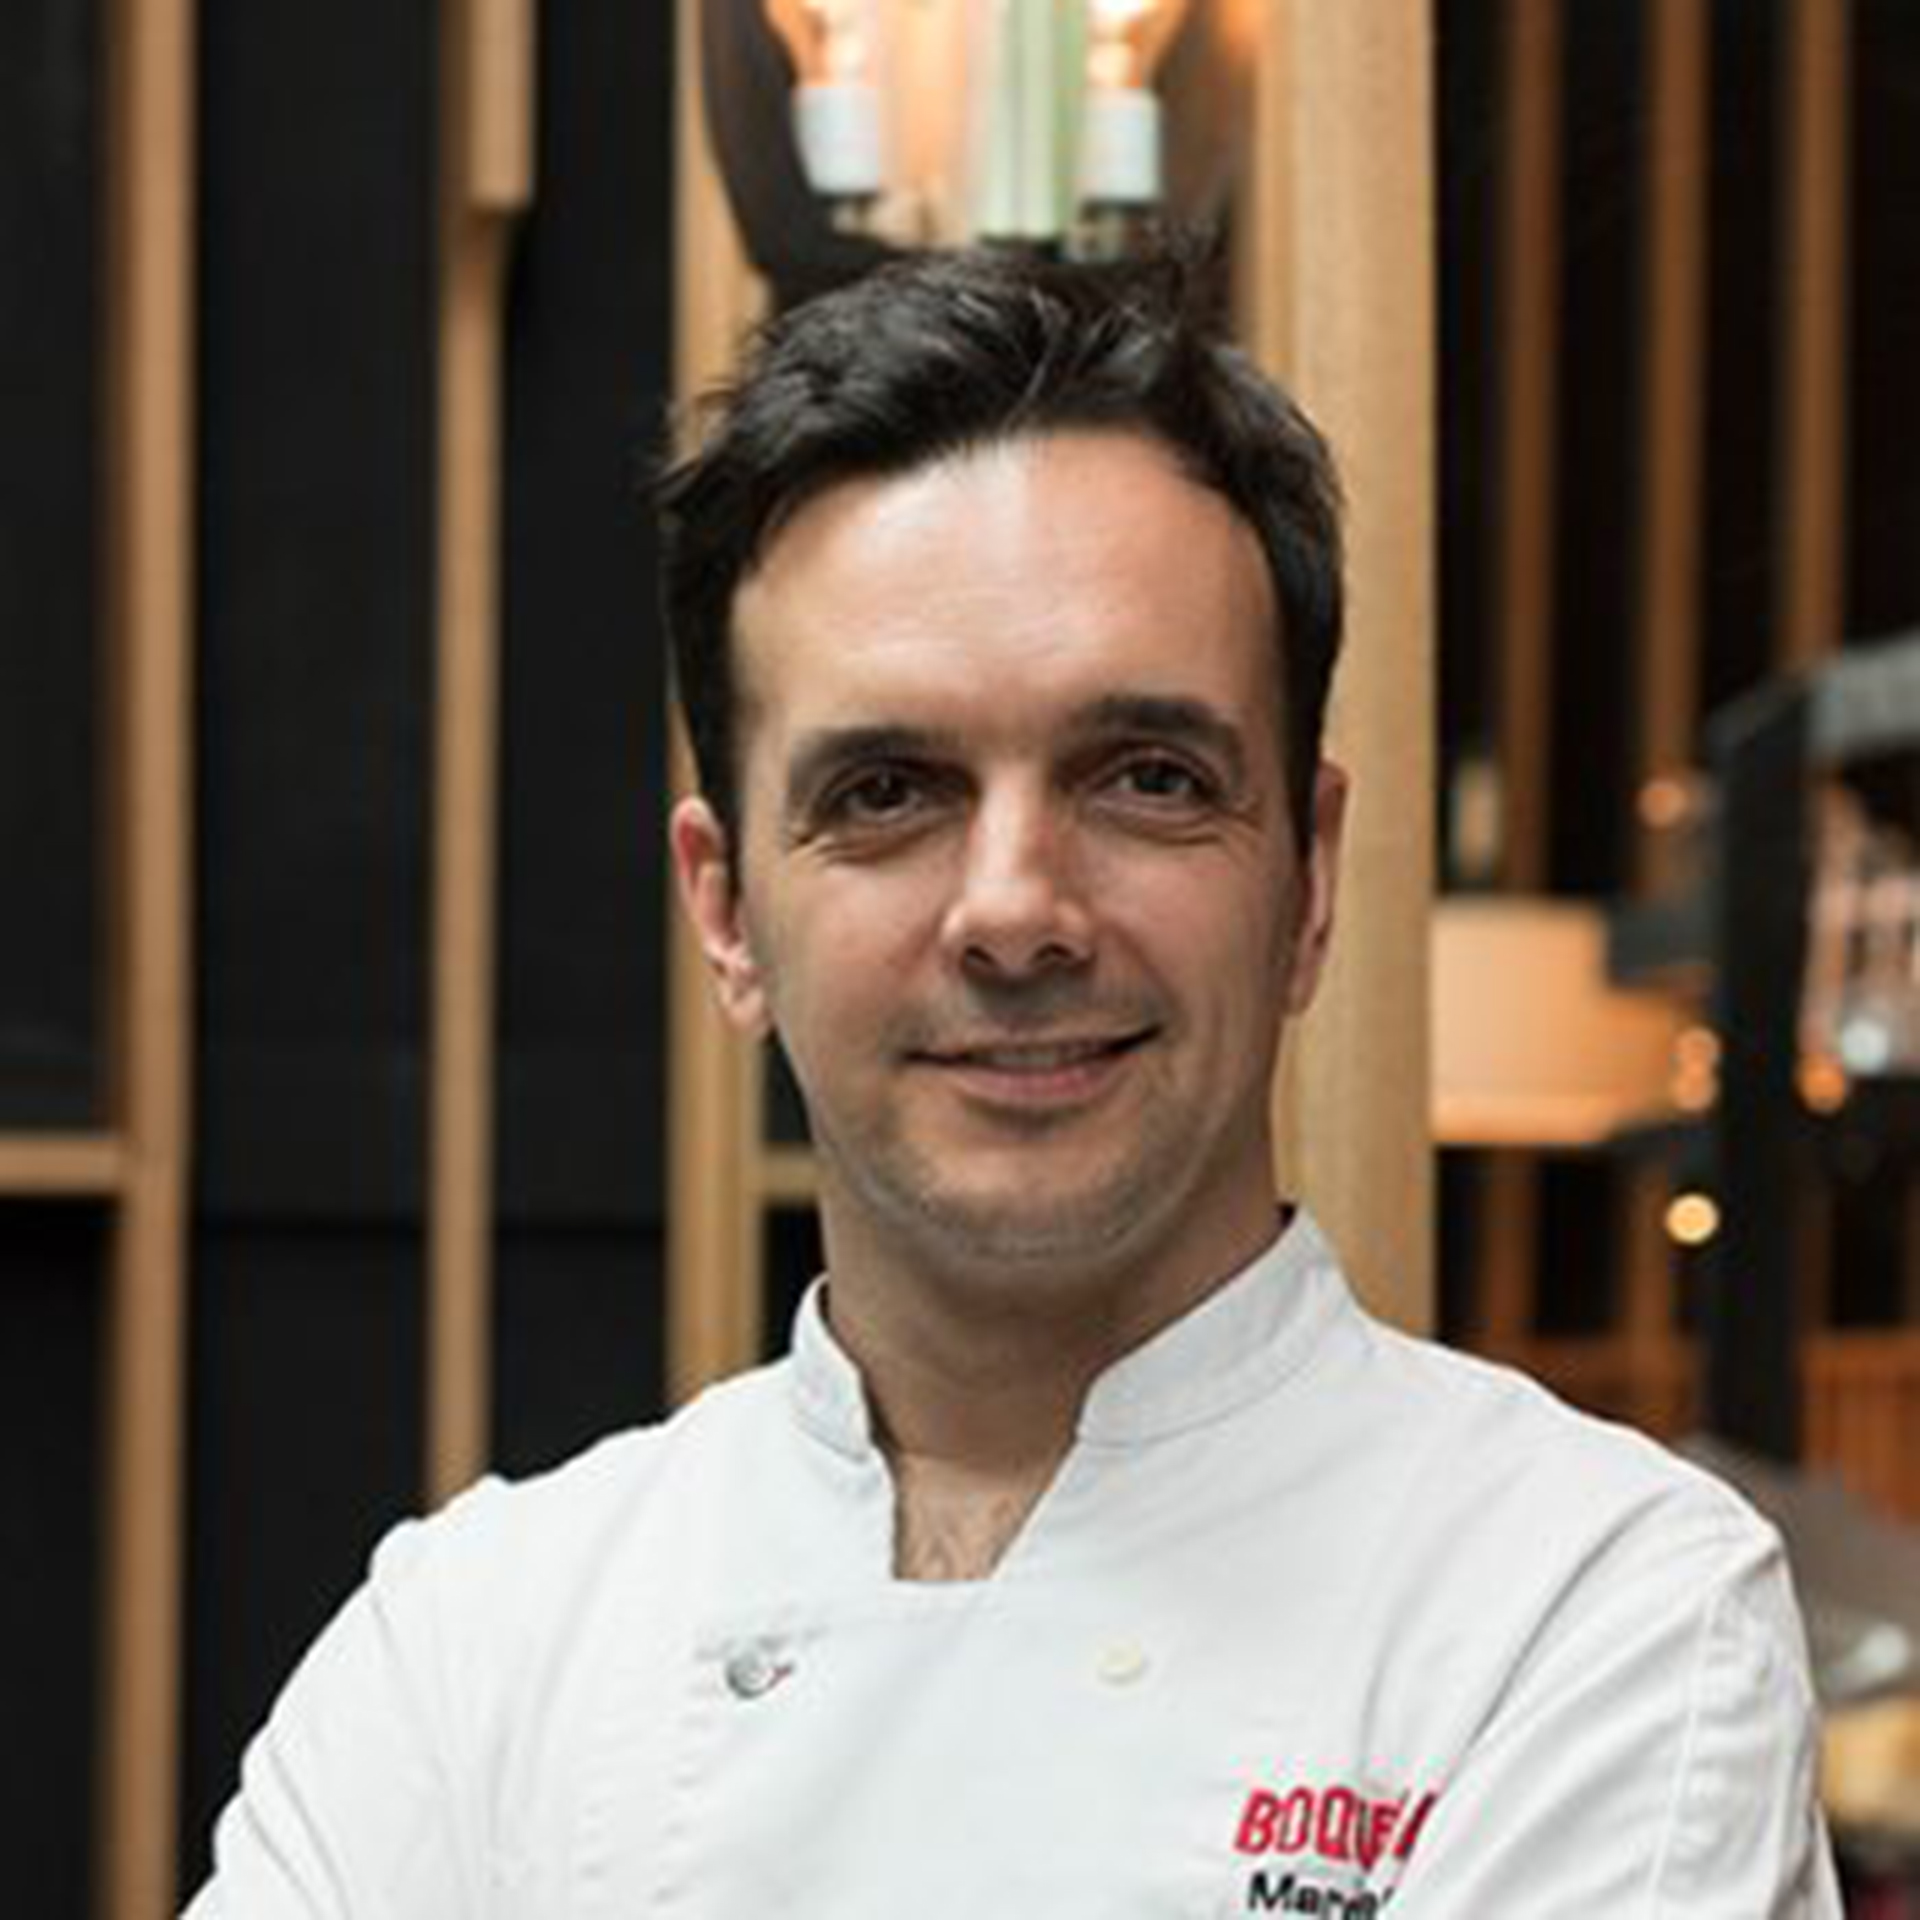 Guest-worthy-Chef-Marc-Vidal